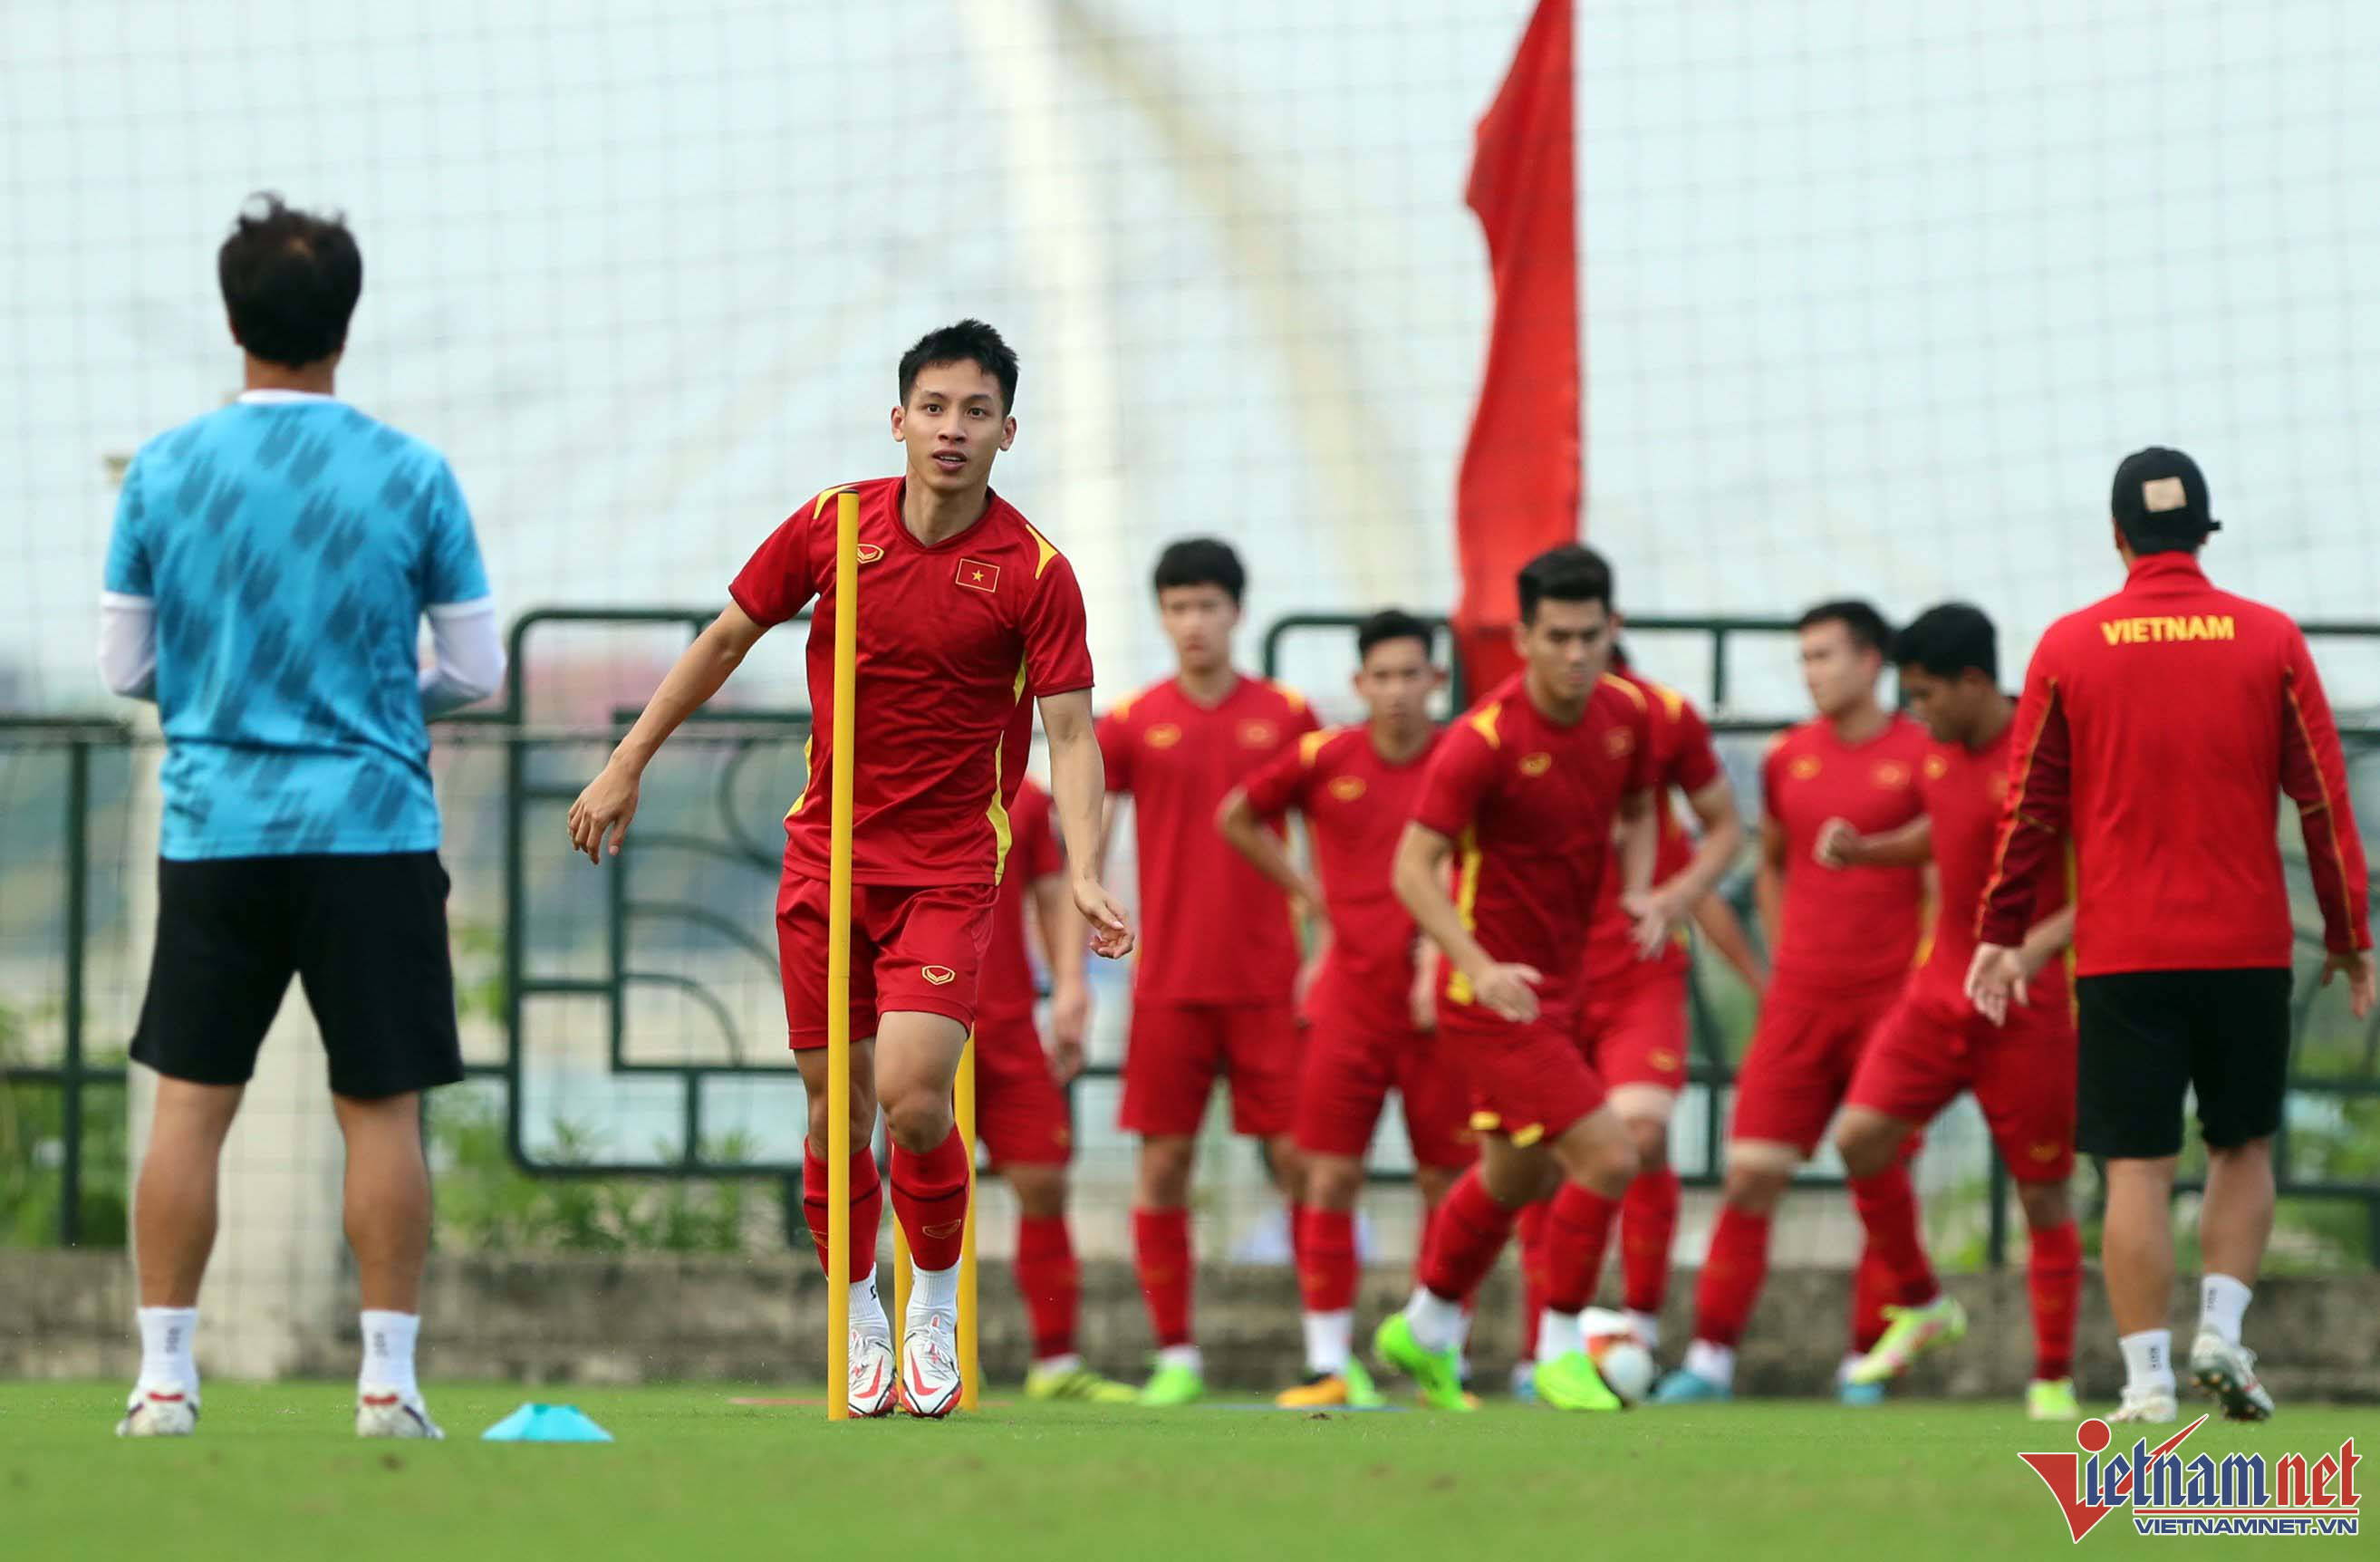 Theo đánh giá của giới chuyên môn, trận bán kết giữa U23 Việt Nam và U23 Malaysia là thử thách cam go cho 2 đội, sau những gì đã trình diễn ở vòng bảng.